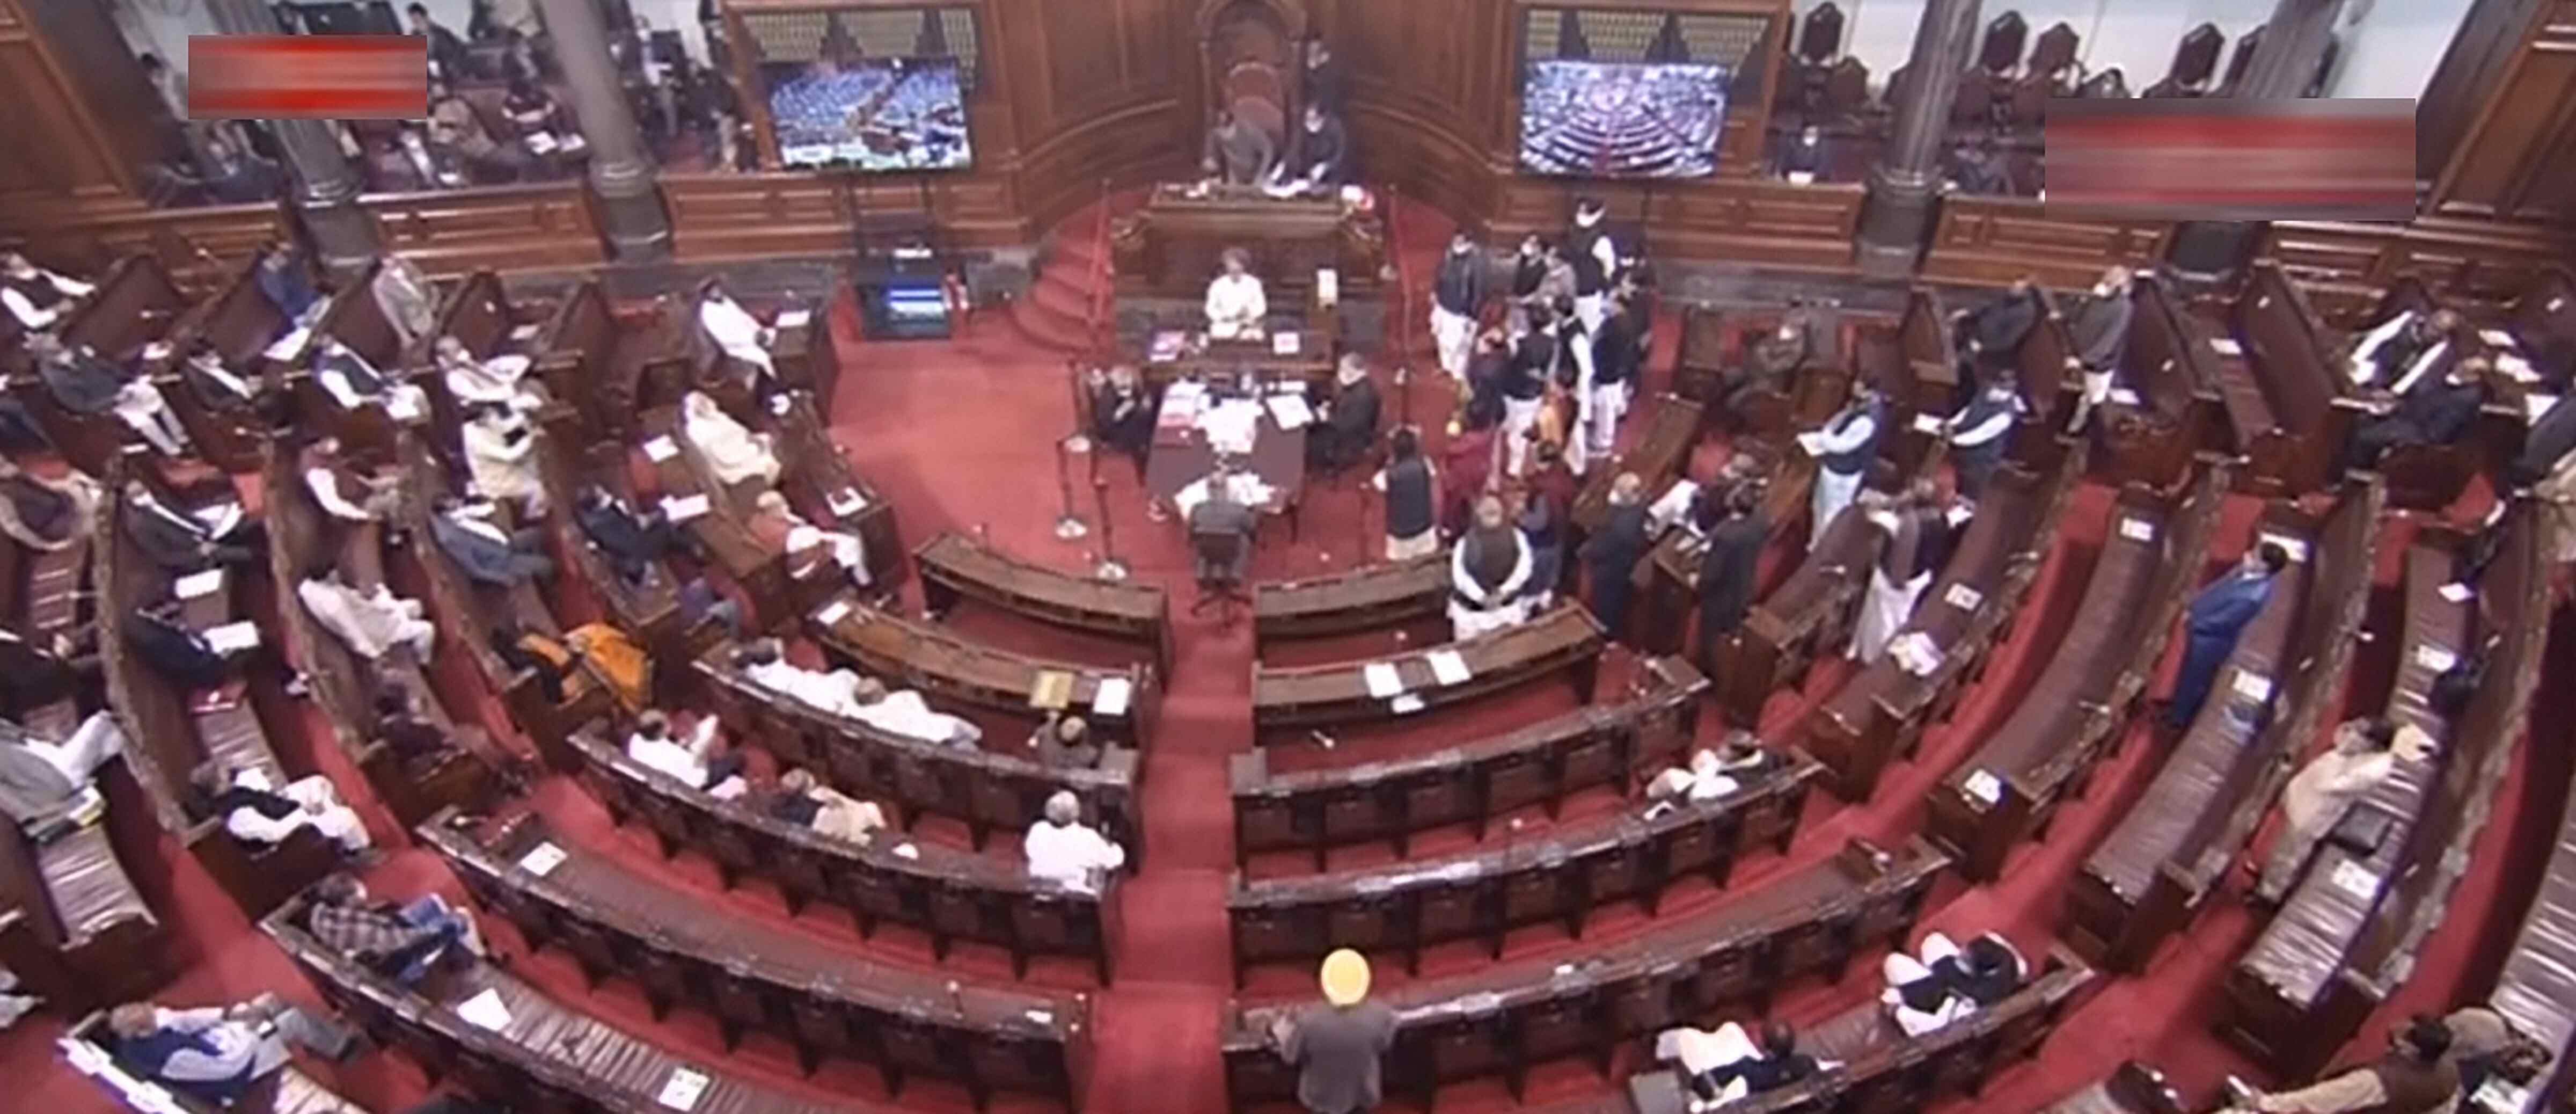 6 newly elected Rajya Sabha members take oath